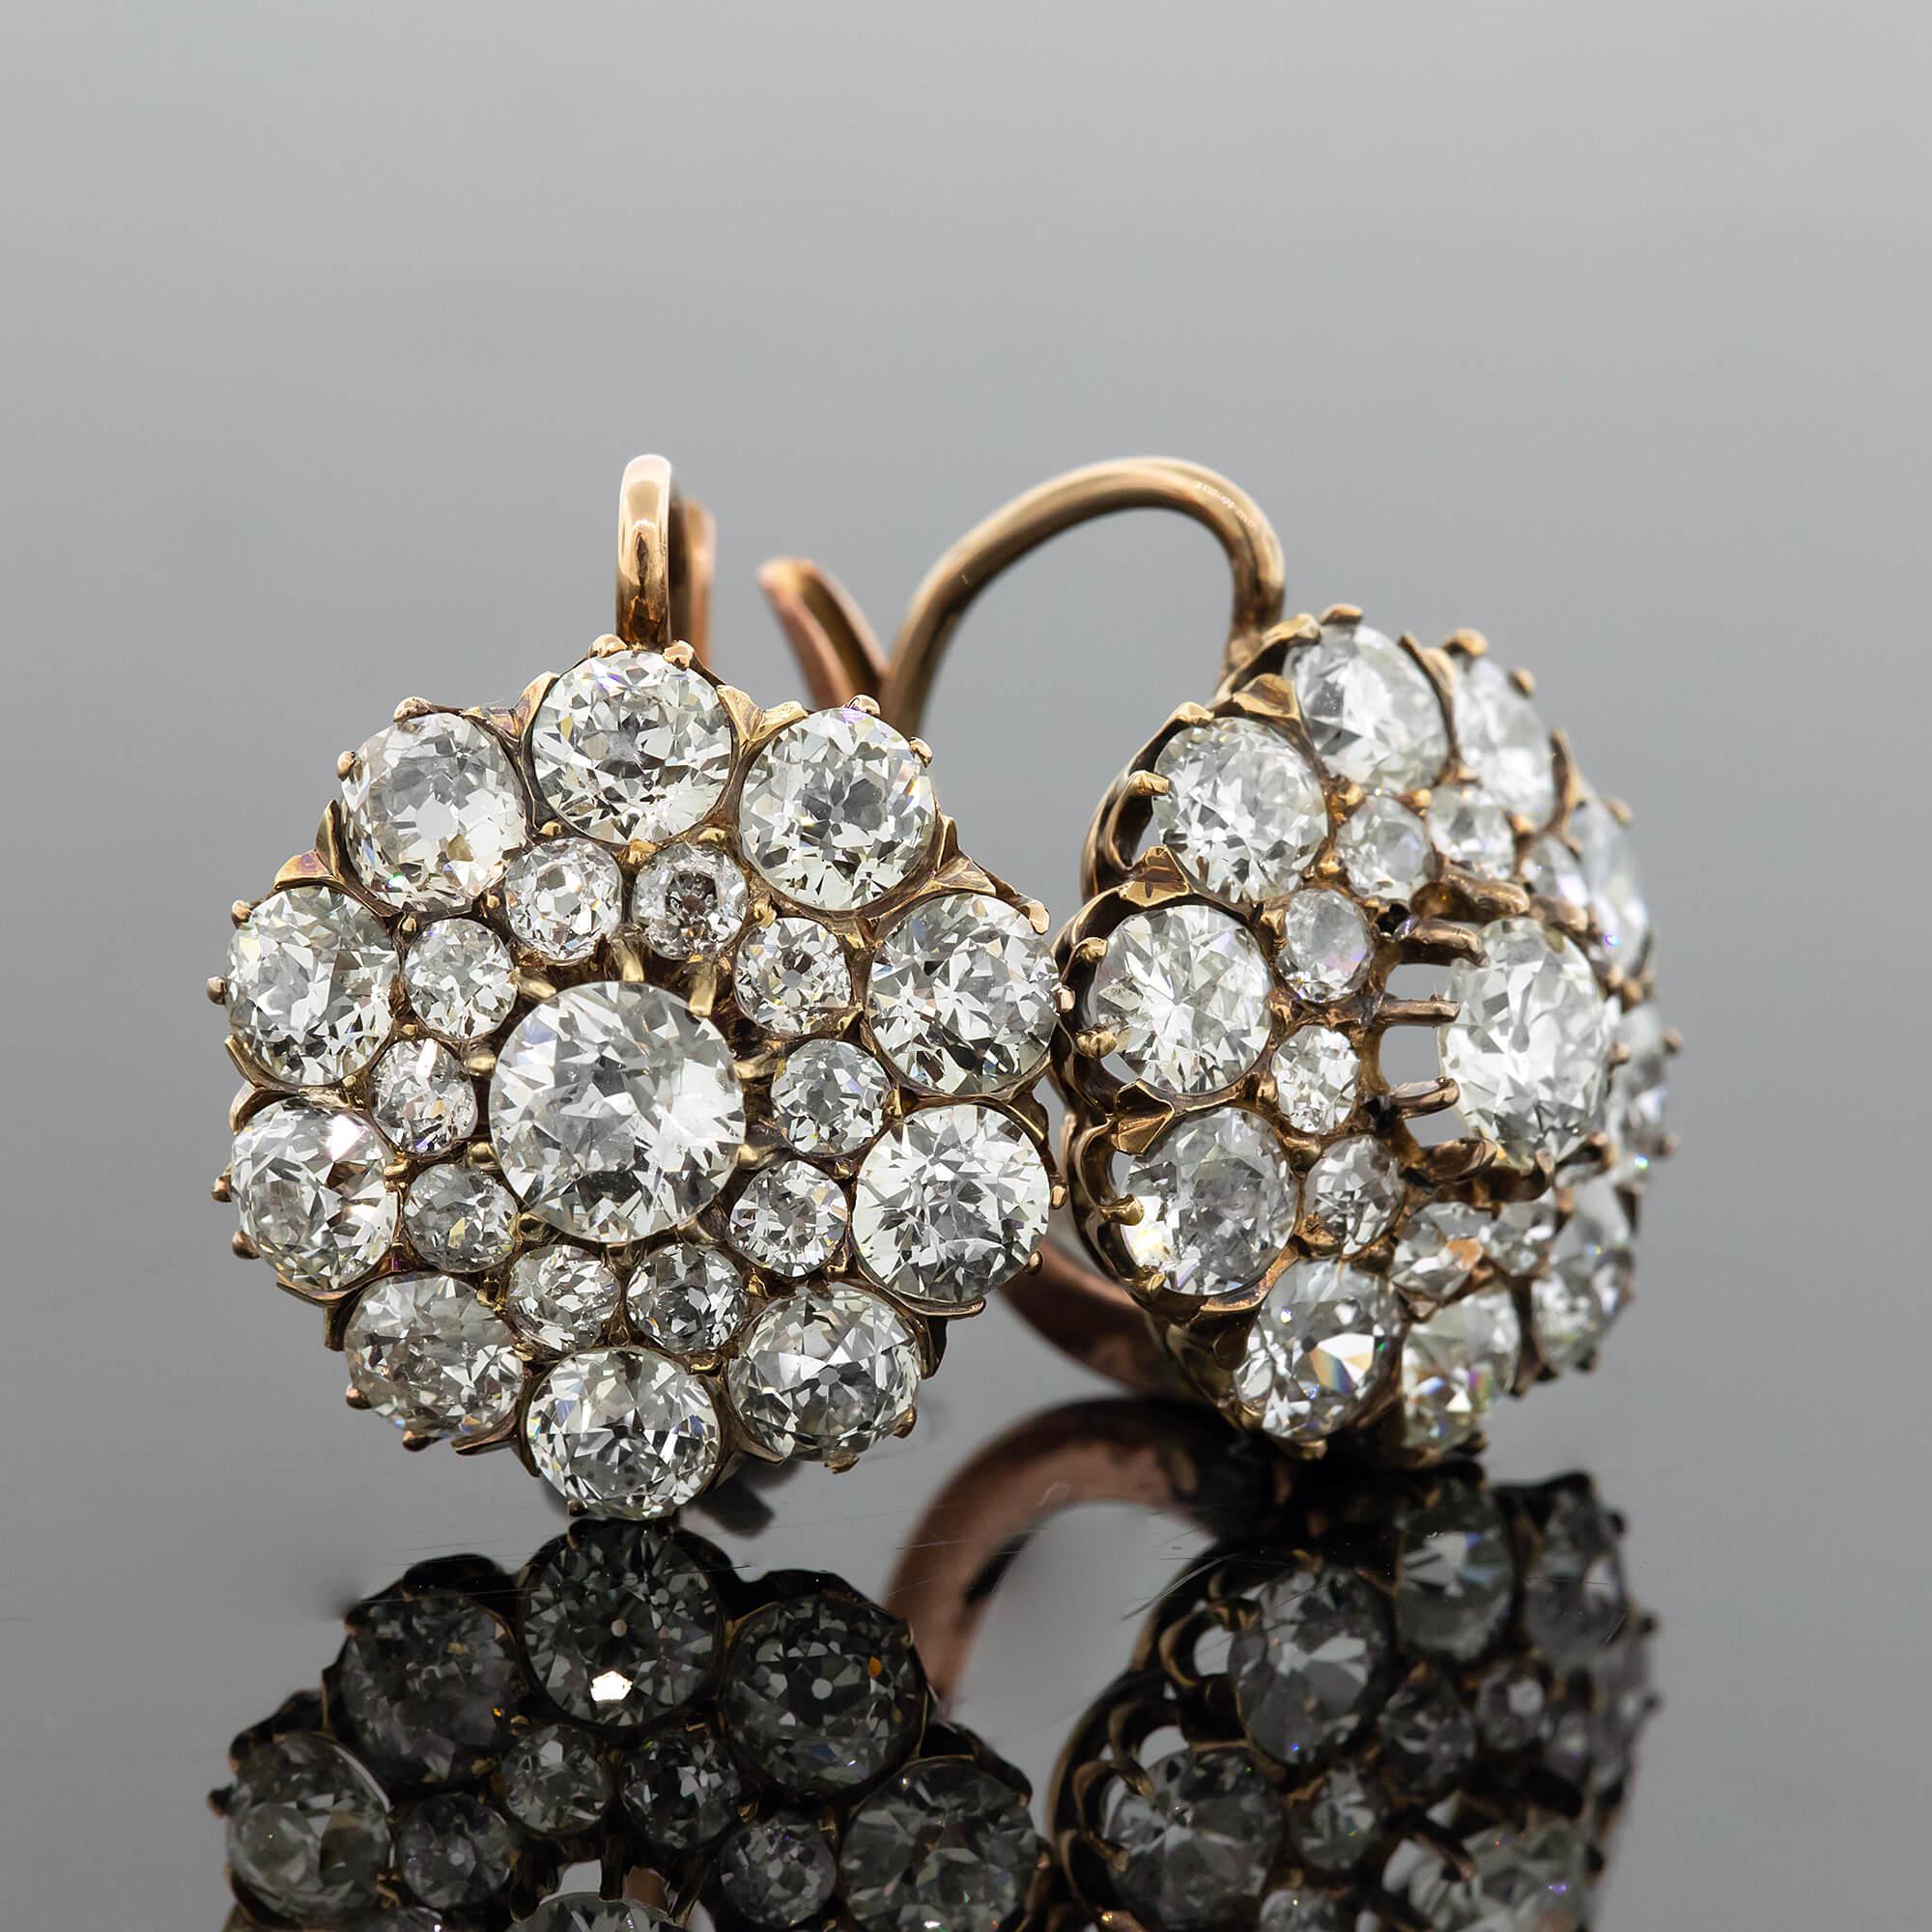 Edwardianische Diamant-Cluster-Ohrringe um 1900-1910 (Alteuropäischer Schliff)